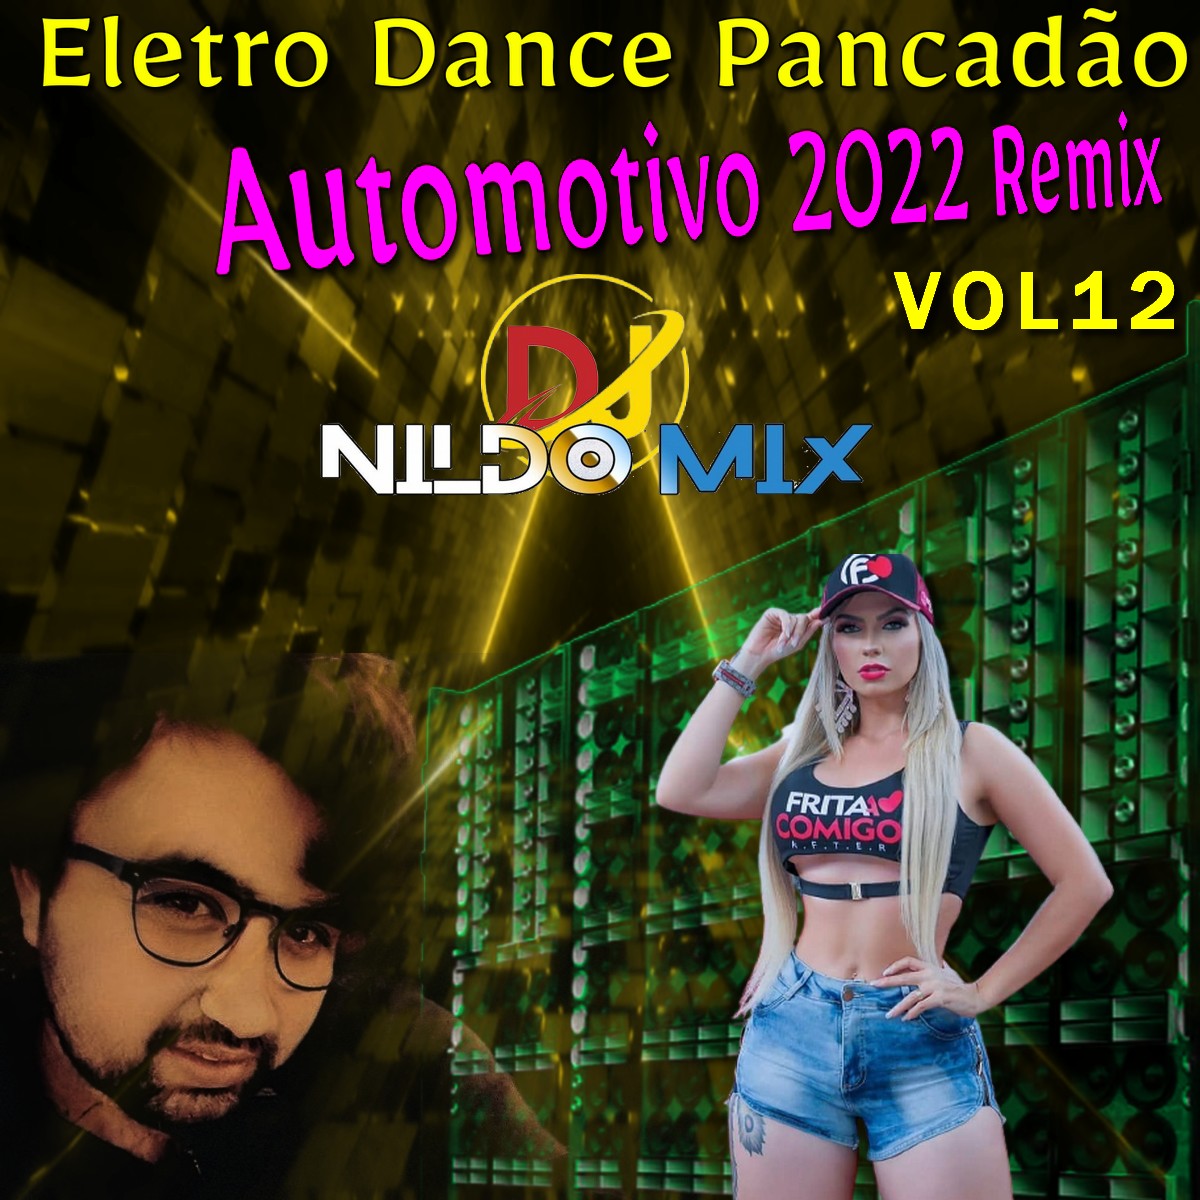 Eletro Dance Pancadão Automotivo 2022 Remix Dj Nildo Mix vol 12